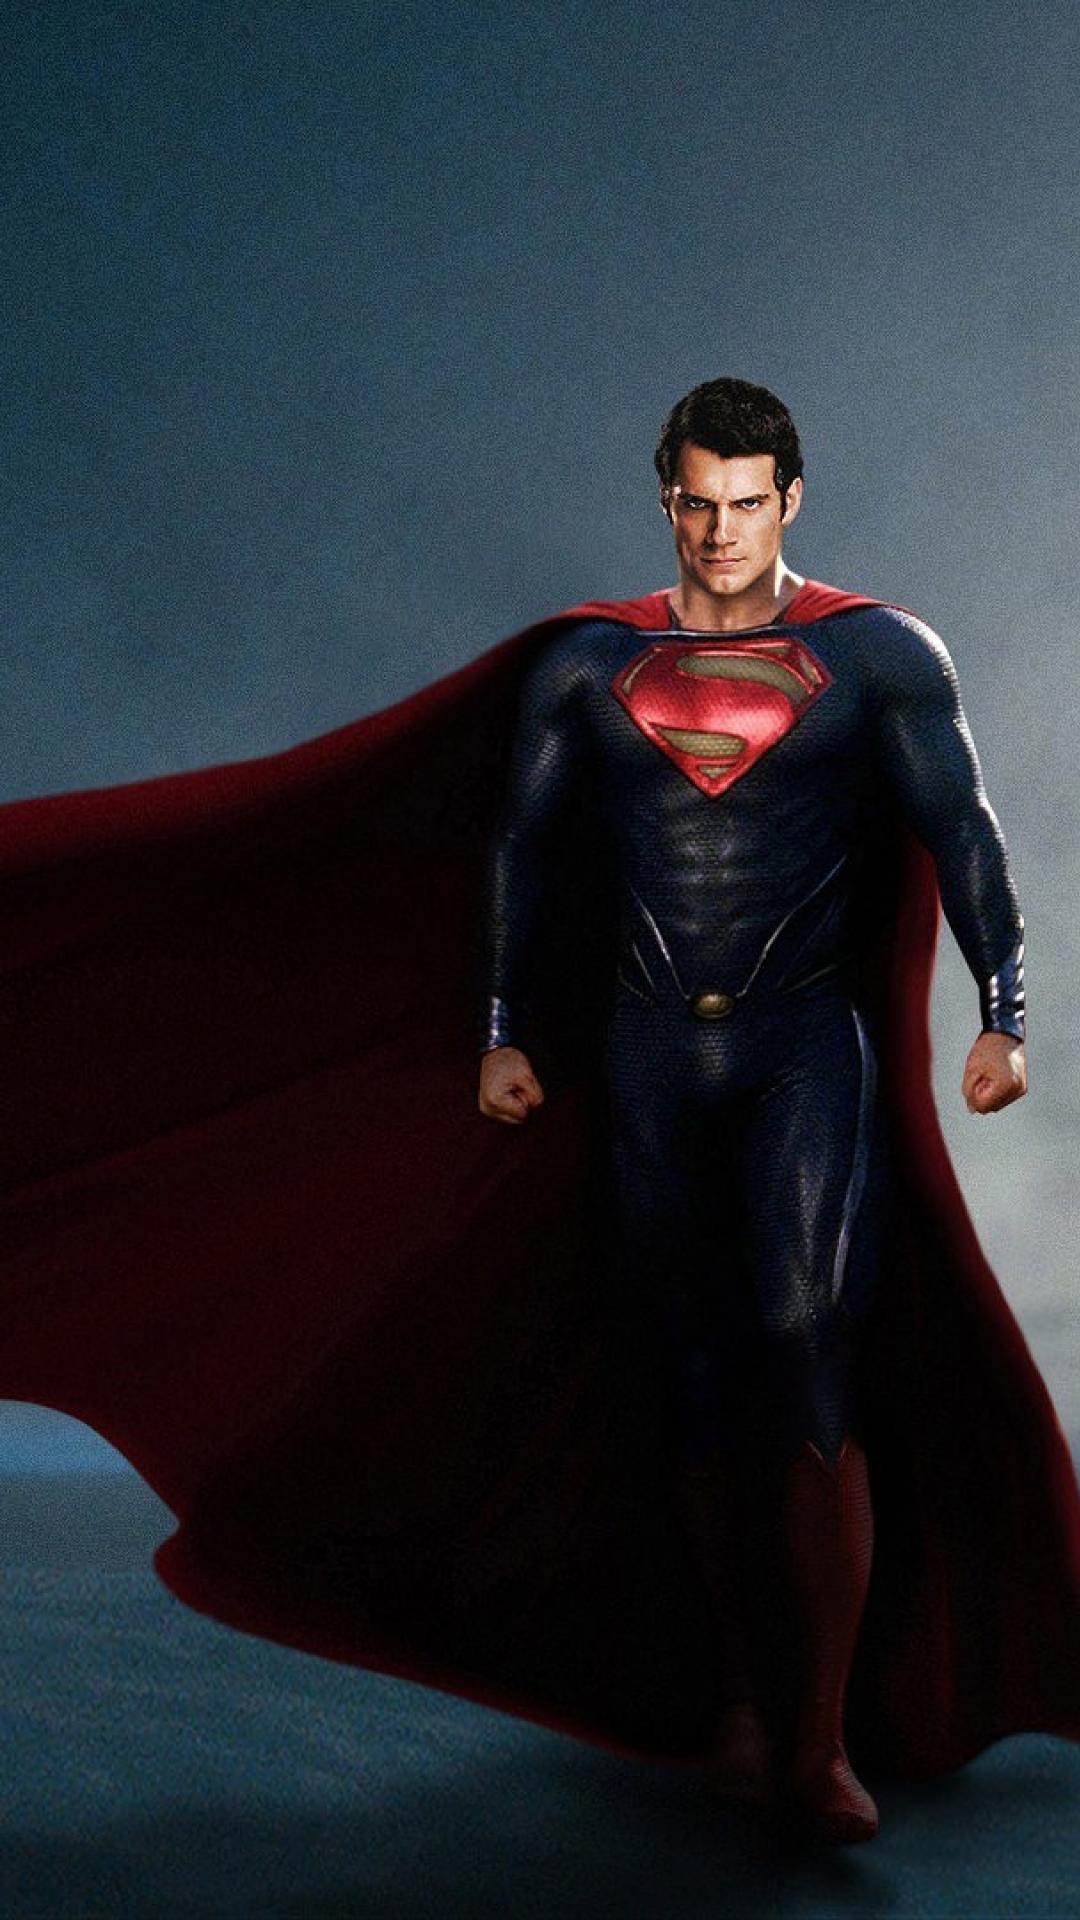 superman wallpaper hd para android,superhombre,superhéroe,personaje de ficción,hombre murciélago,liga de la justicia